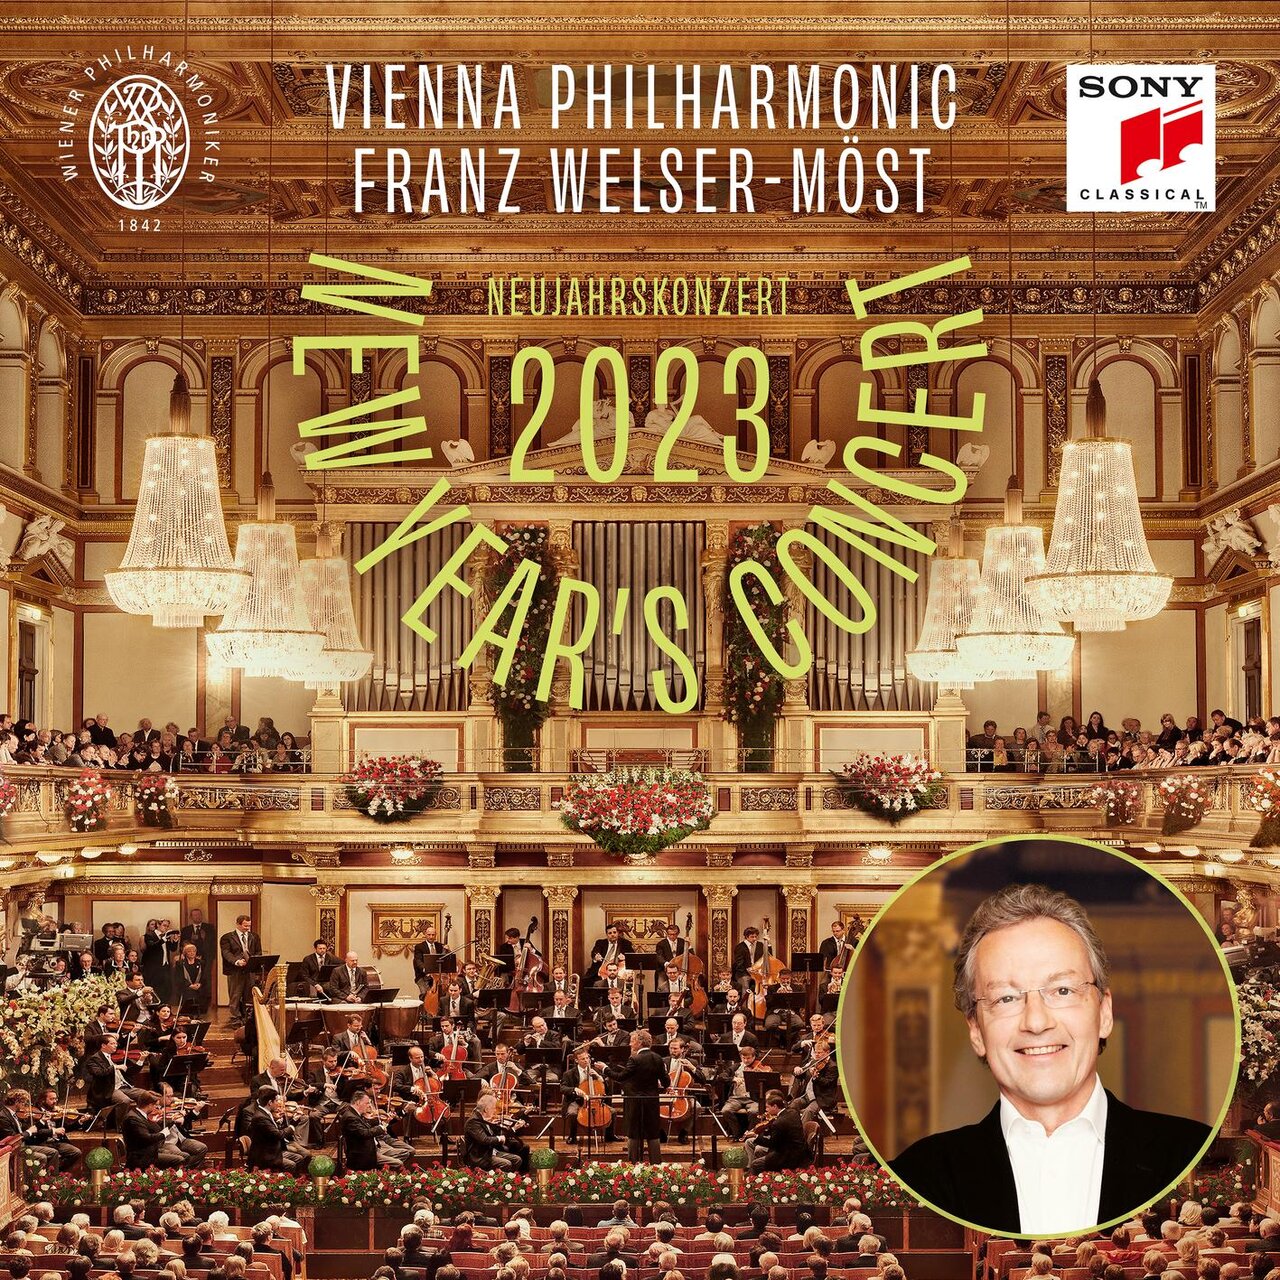 2023维也纳新年音乐会（弗朗茨·威尔瑟 莫斯特,维也纳爱乐乐团）